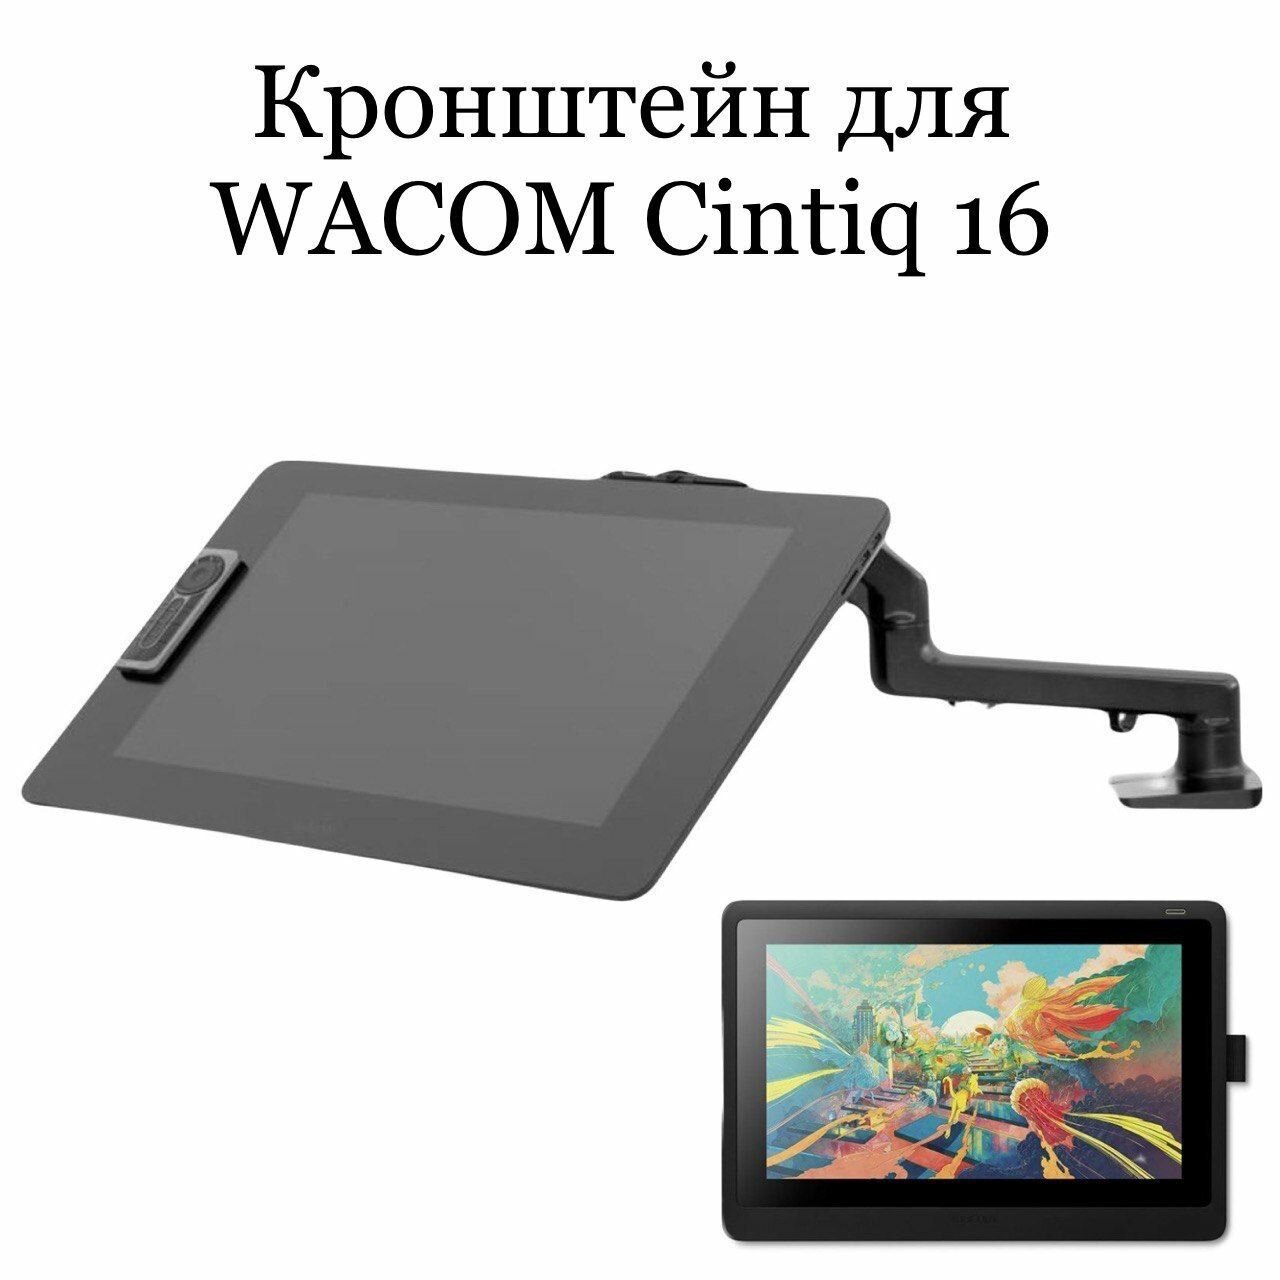 Кронейн для Wacom Cintiq 16 (DTK-1660)